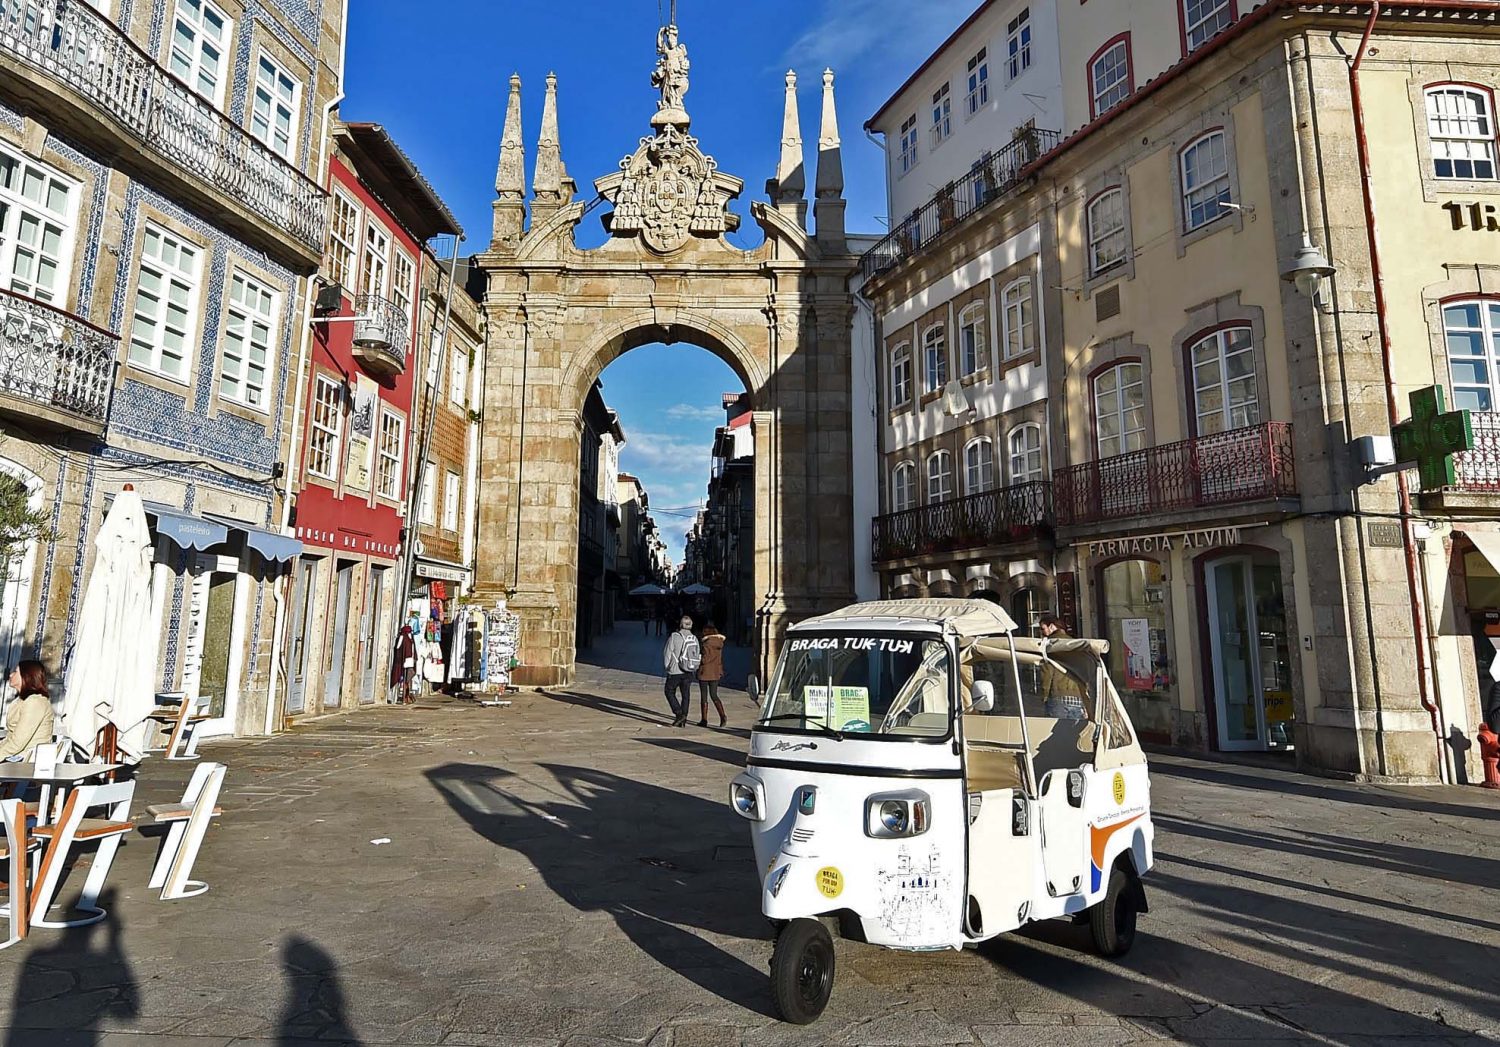 Thành phố Braga được tạo ra cho những người yêu thích mua sắm, ẩm thực, lịch sử và tìm kiếm những điều mới mẻ